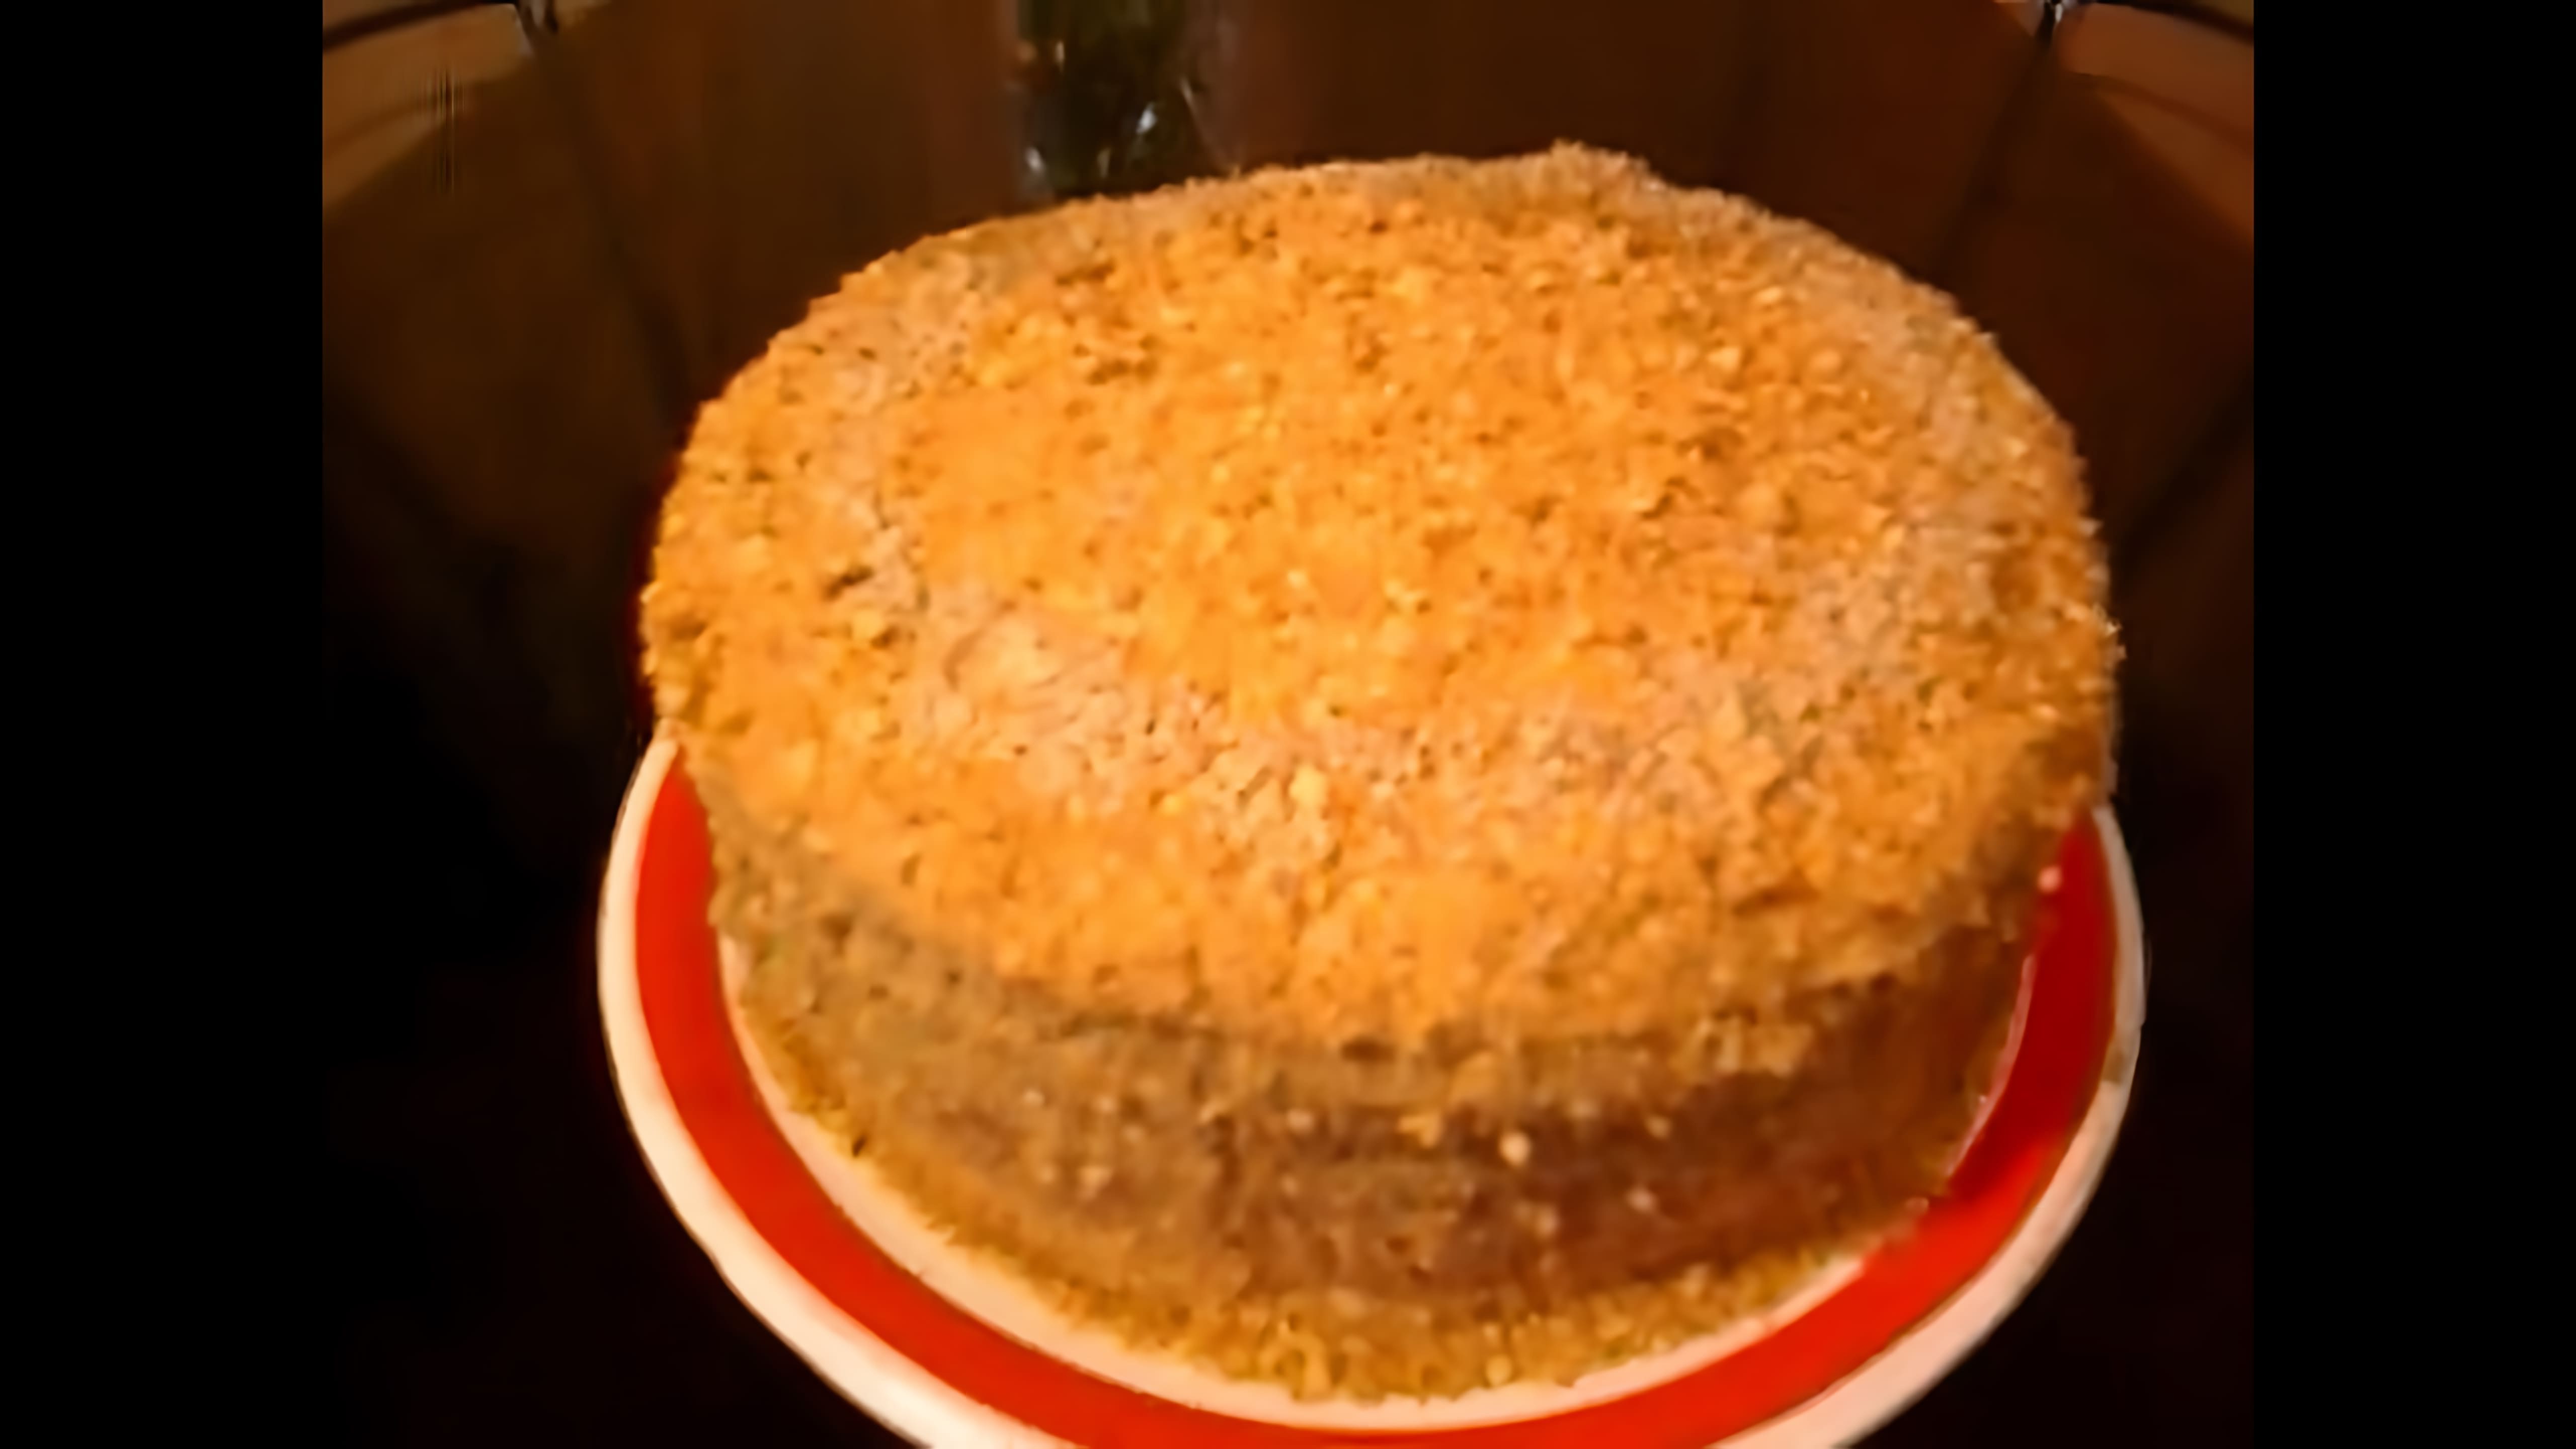 В этом видео демонстрируется рецепт приготовления торта из томатного сока